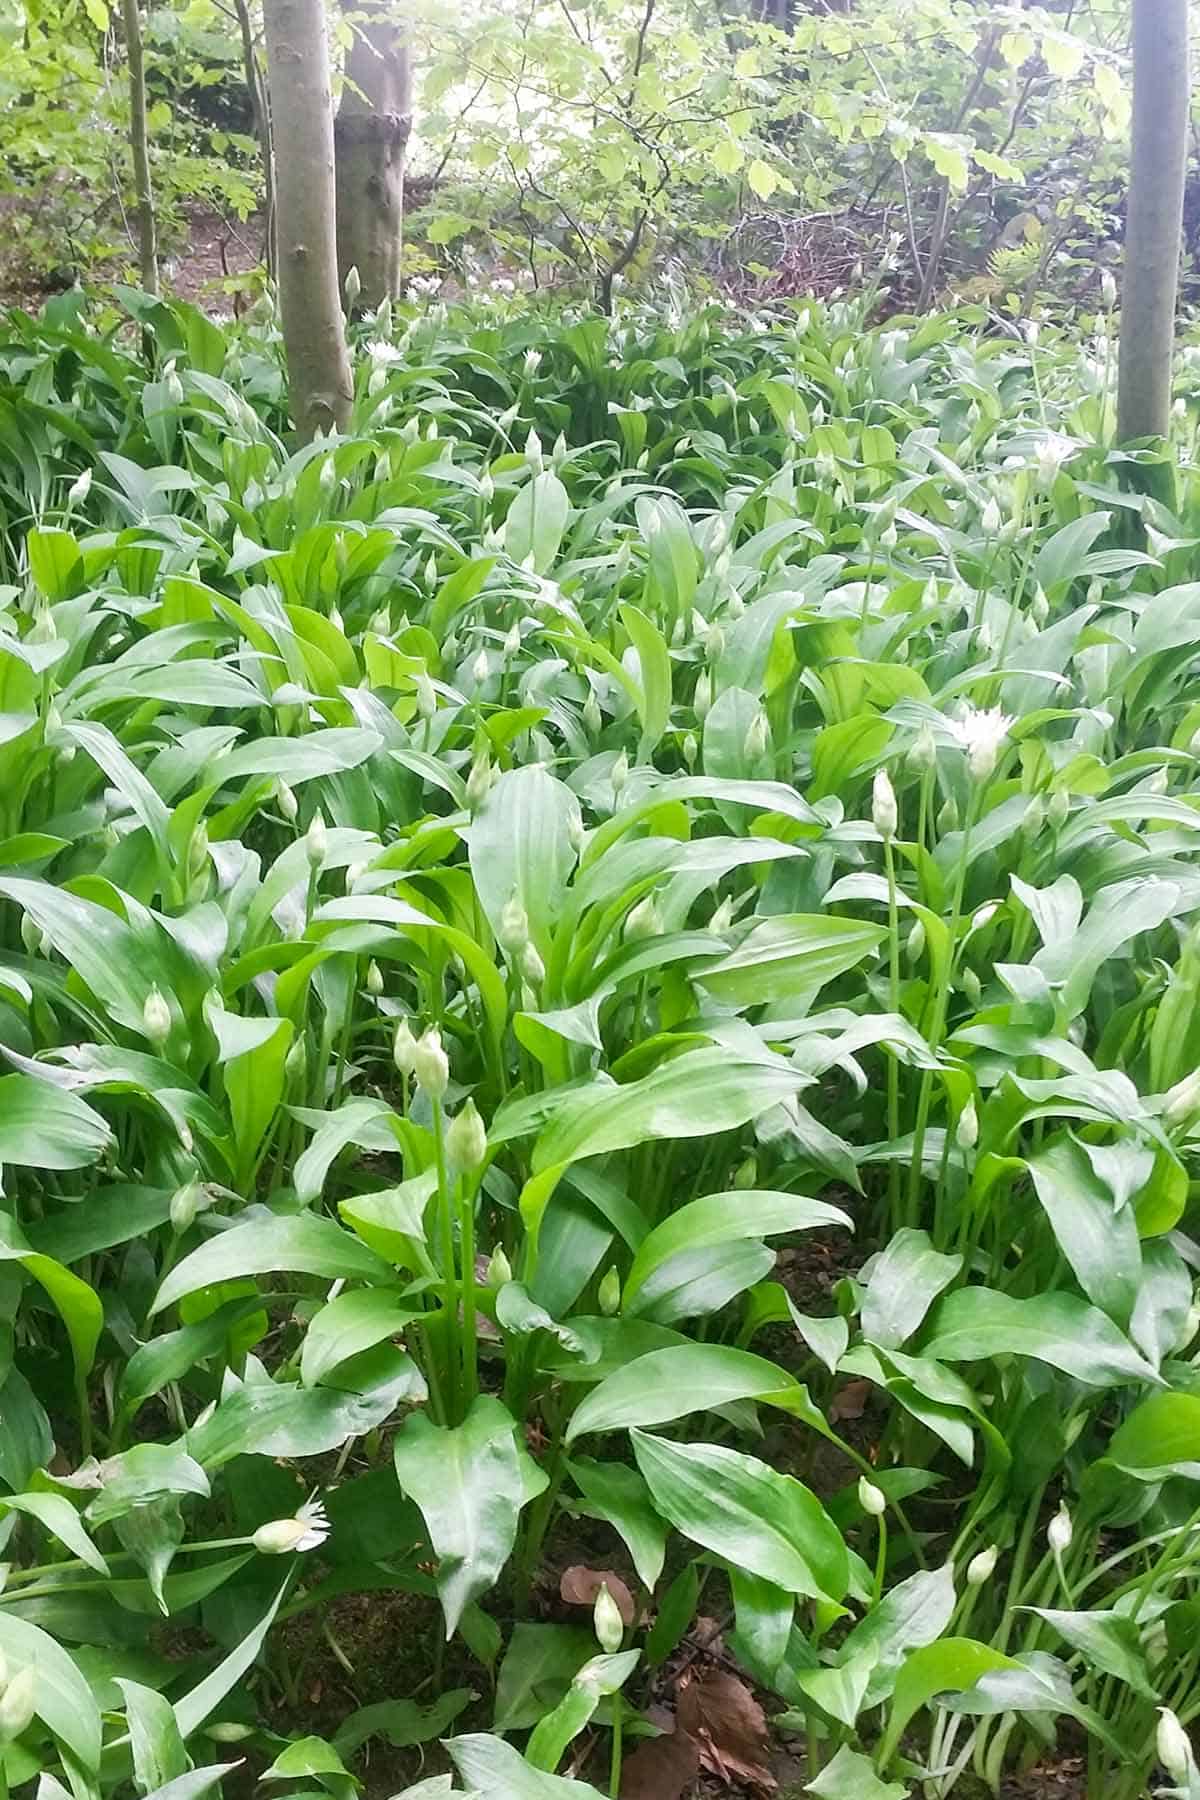 Wild Garlic Plants in British Woodland